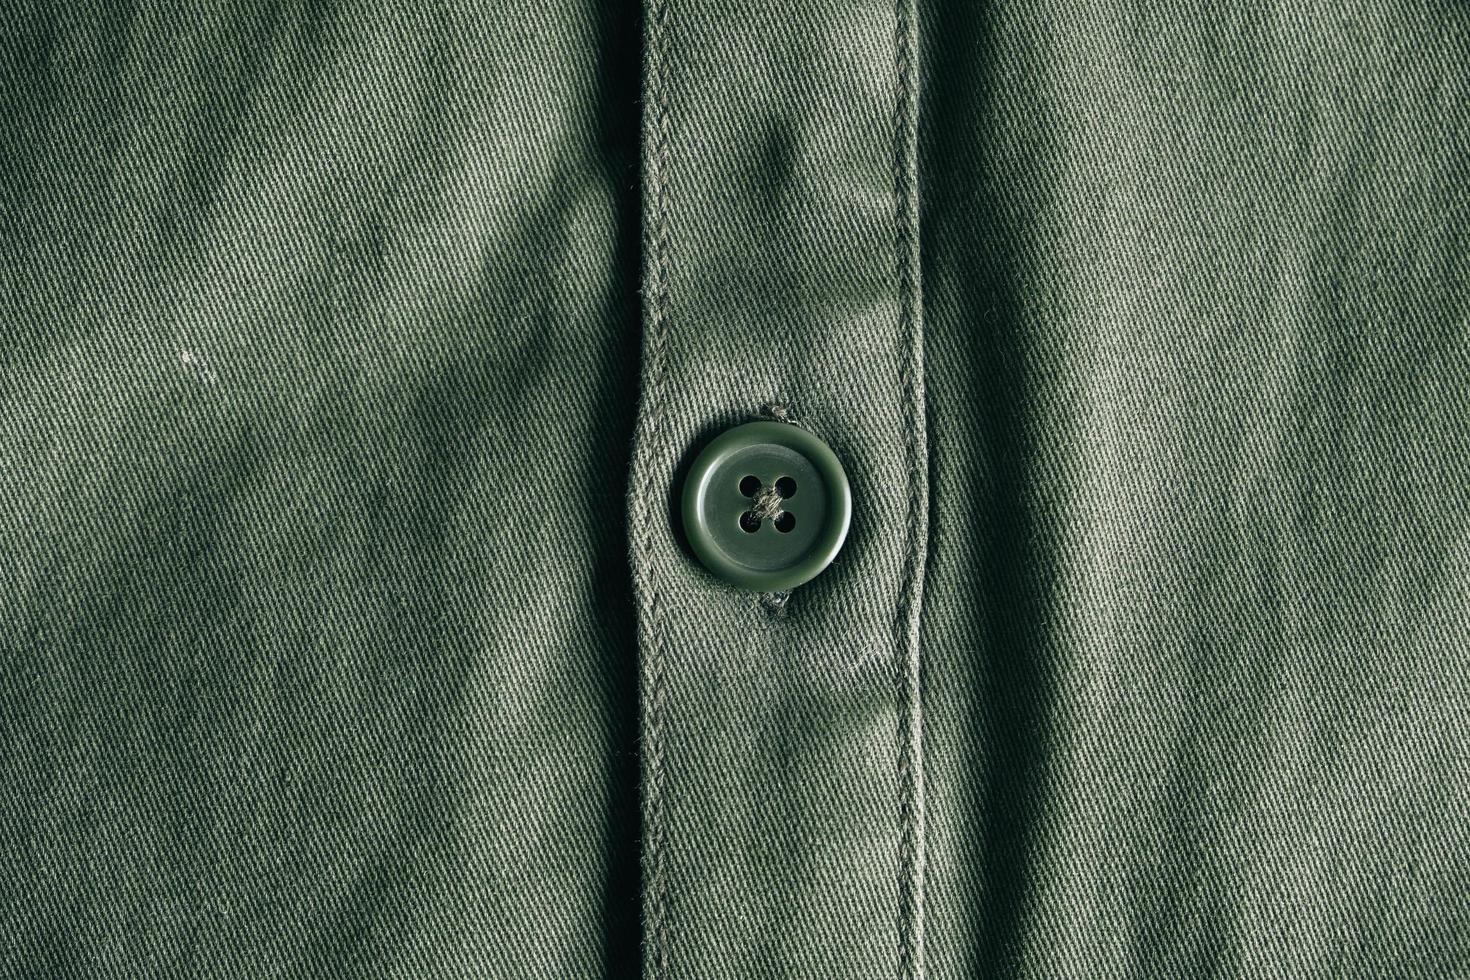 bouton vert sur la veste verte. détail des vêtements photo